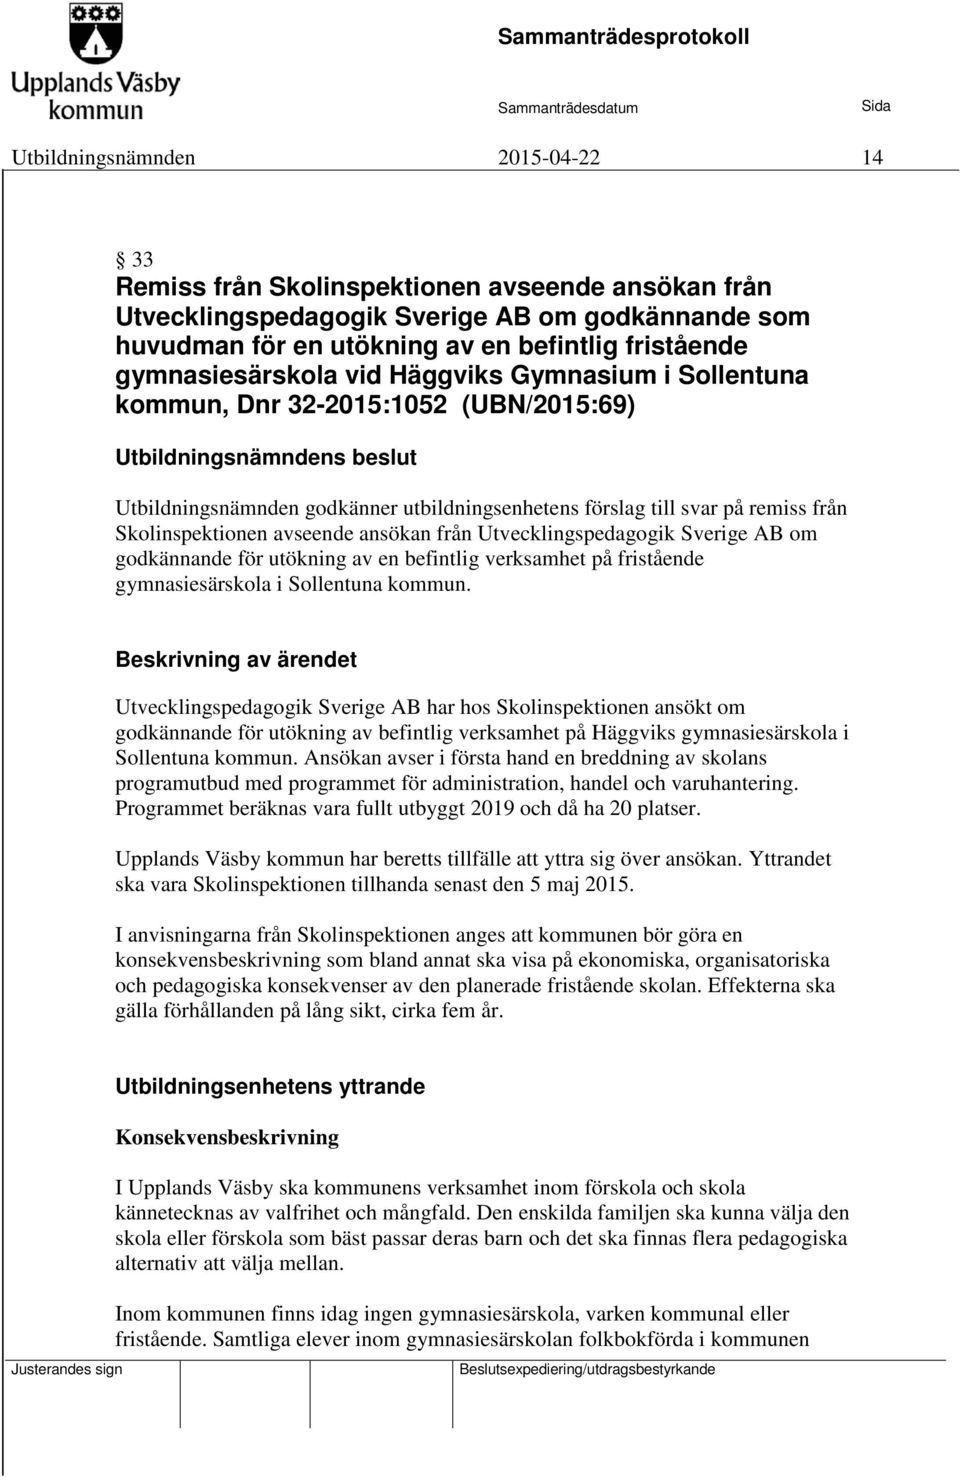 ansökan från Utvecklingspedagogik Sverige AB om godkännande för utökning av en befintlig verksamhet på fristående gymnasiesärskola i Sollentuna kommun.